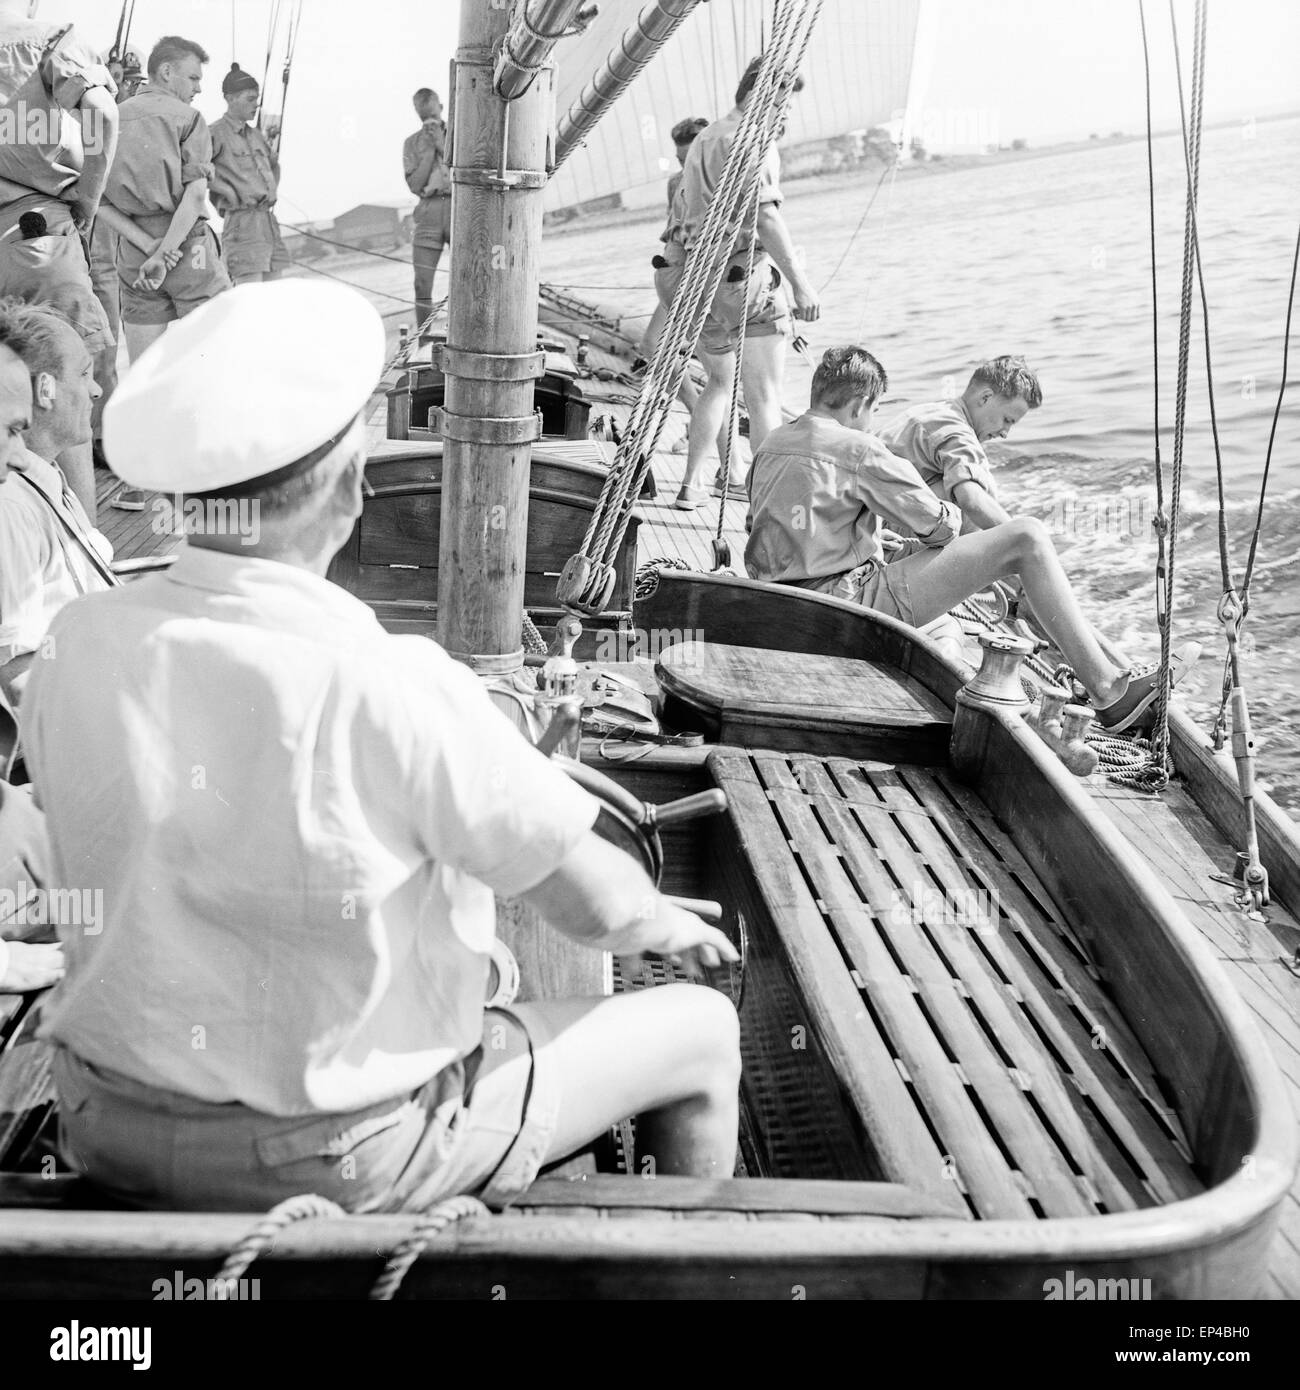 Schüler üben auf dem Ausbildungsschiff der Seemannsschule Falkenstein in Hamburg Blankenese, Deutschland 1950er Jahre. Pupils ex Stock Photo